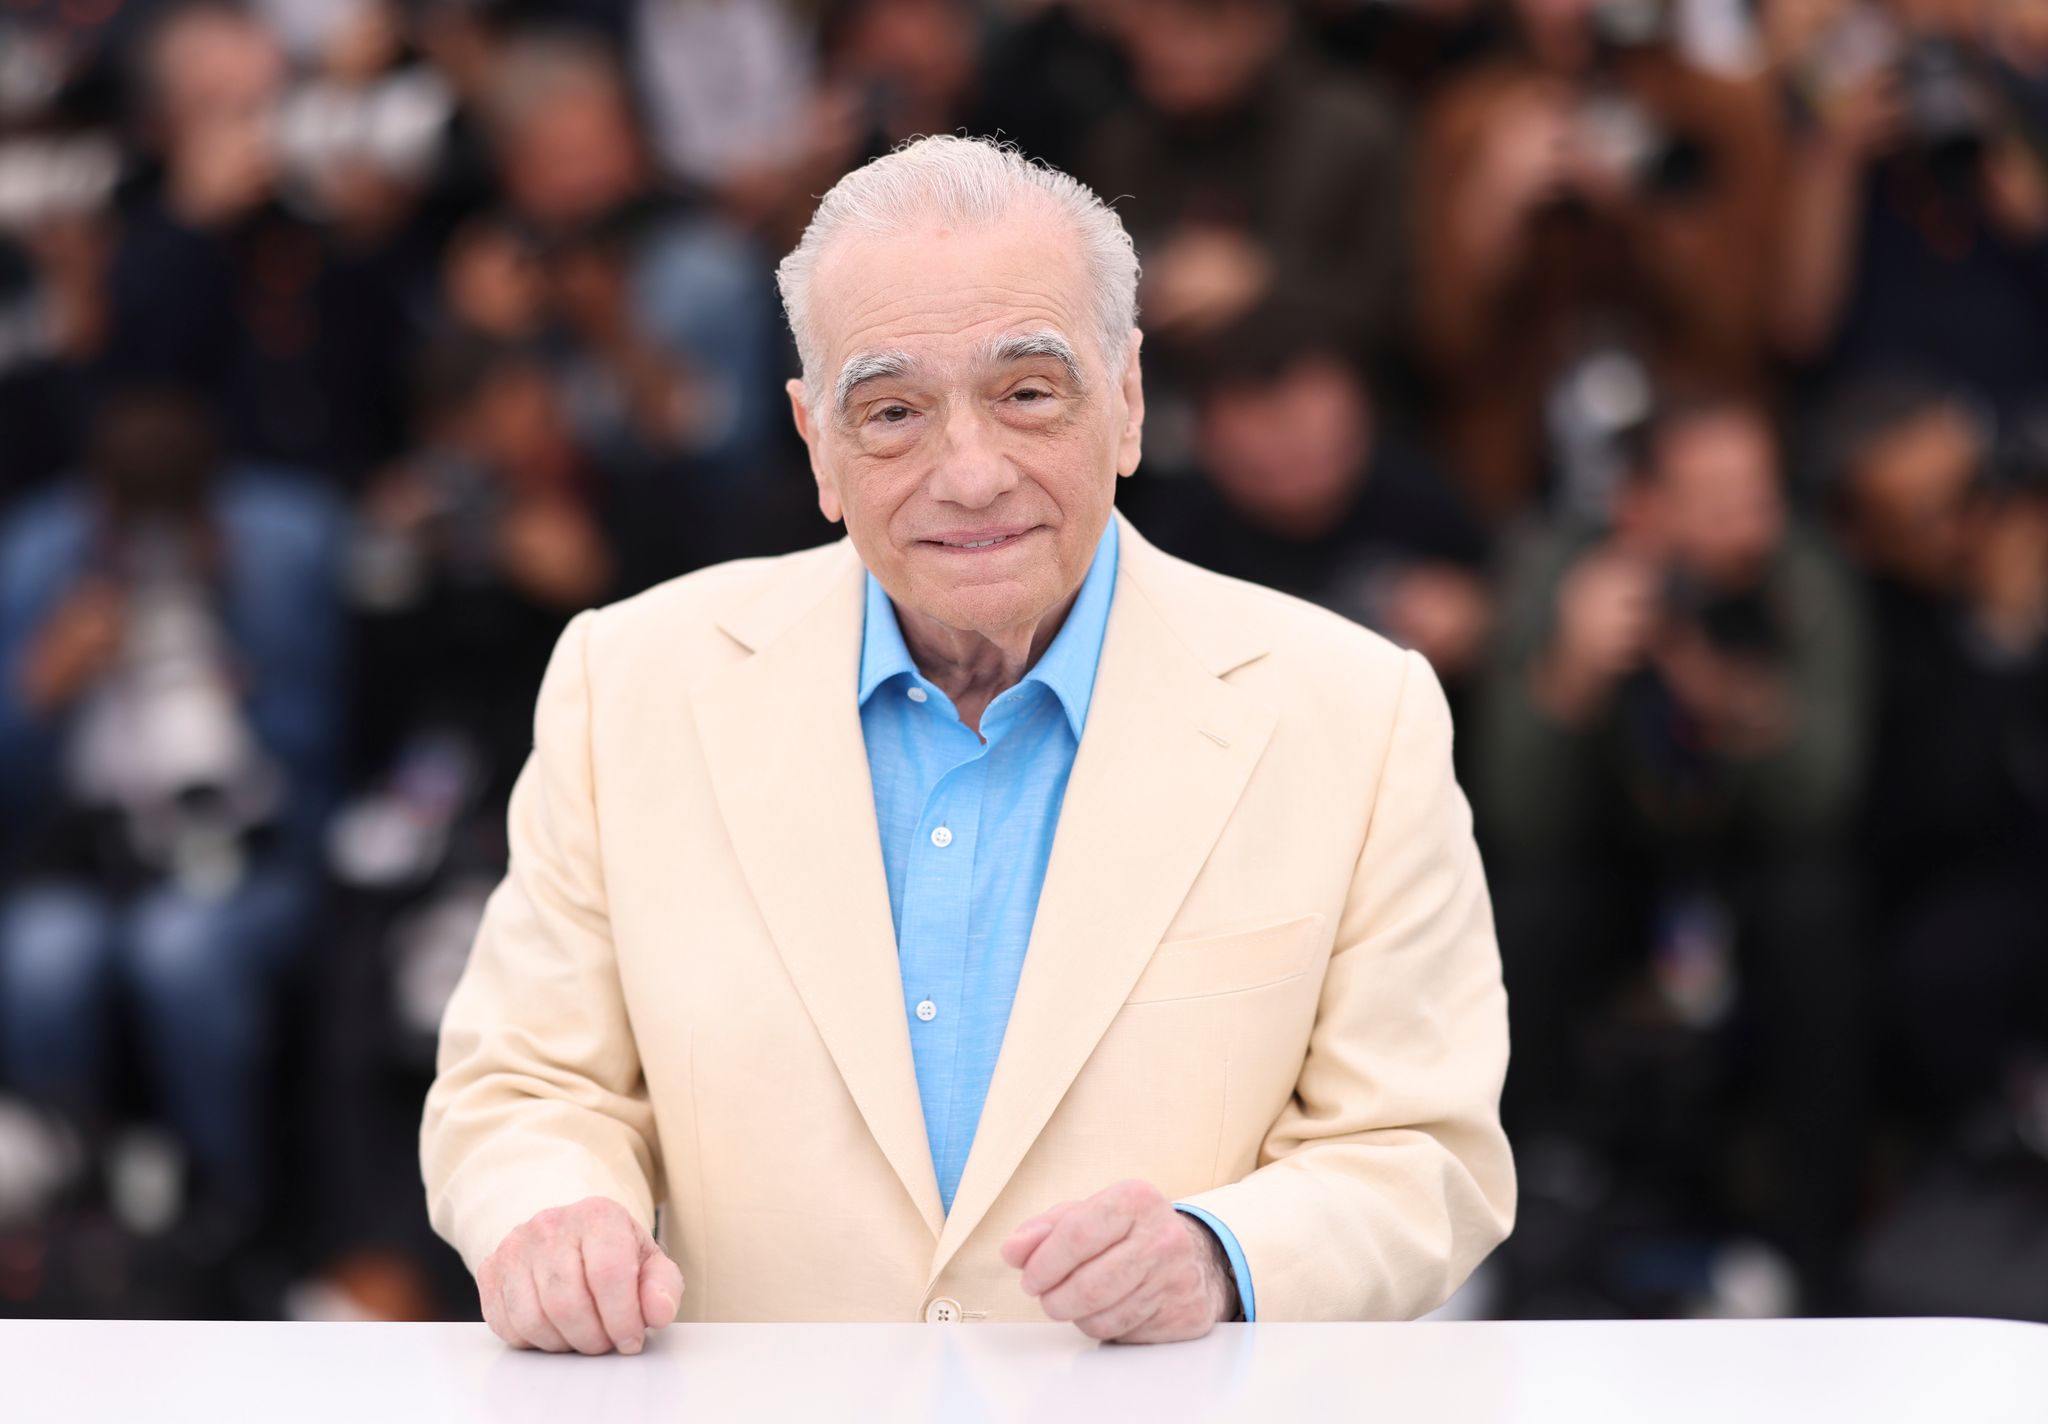 Martin Scorsese, Regisseur aus den USA, steht während eines Fototermins in Cannes. Er wird mit dem Goldenen Ehrenbären der Berlinale für sein Lebenswerk ausgezeichnet. (zu dpa "Goldener Ehrenbär der Berlinale für Regisseur Martin Scorsese")